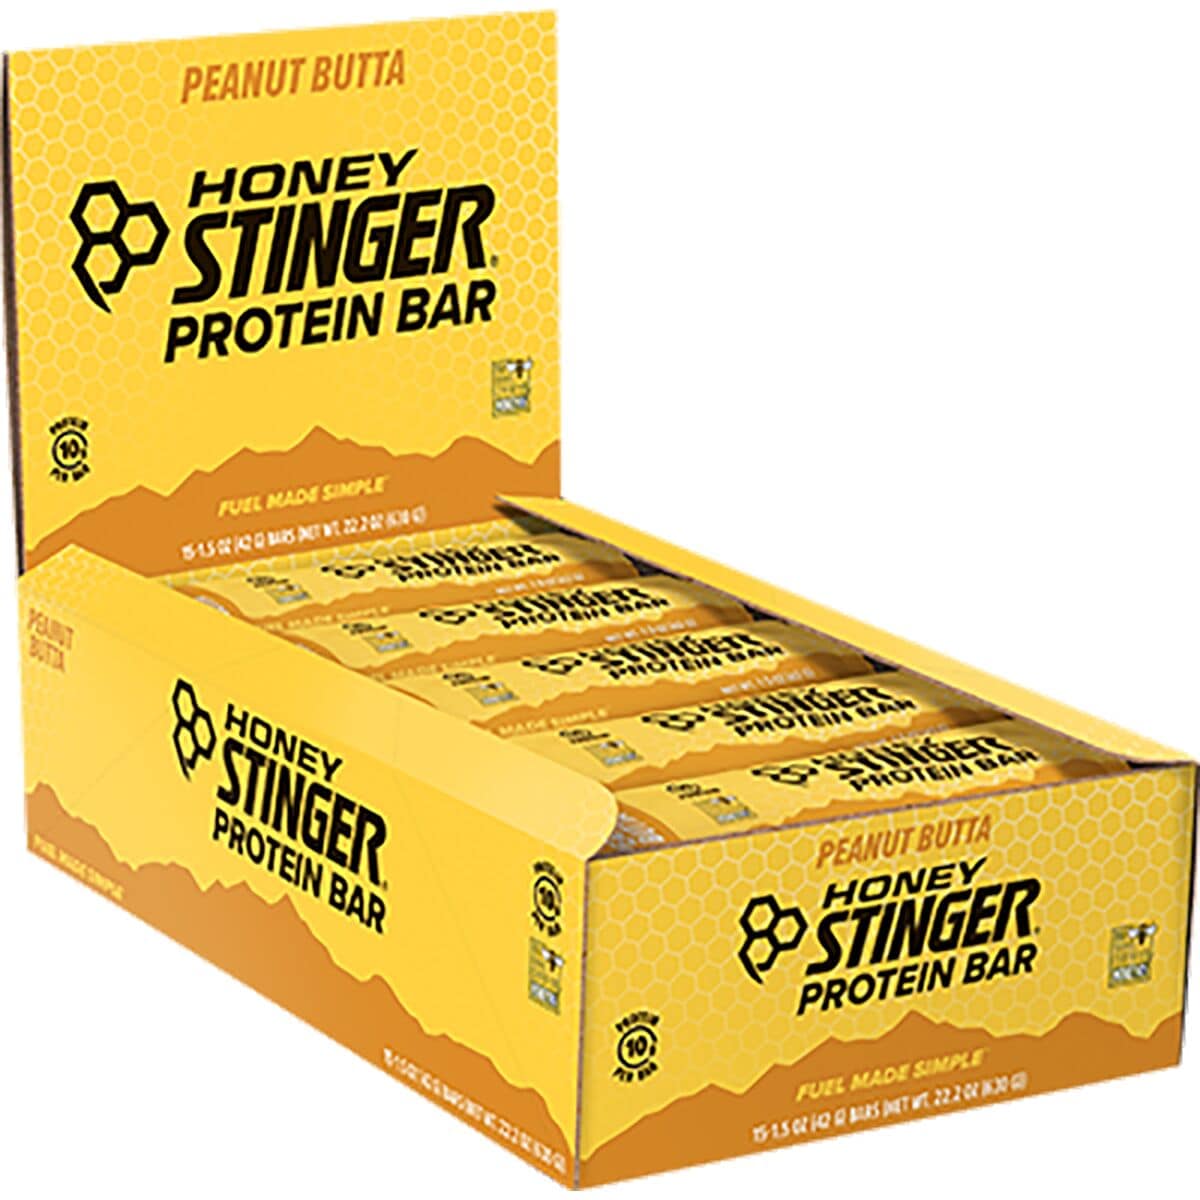 Honey Stinger Protein Bar - 10g - 15 Pack